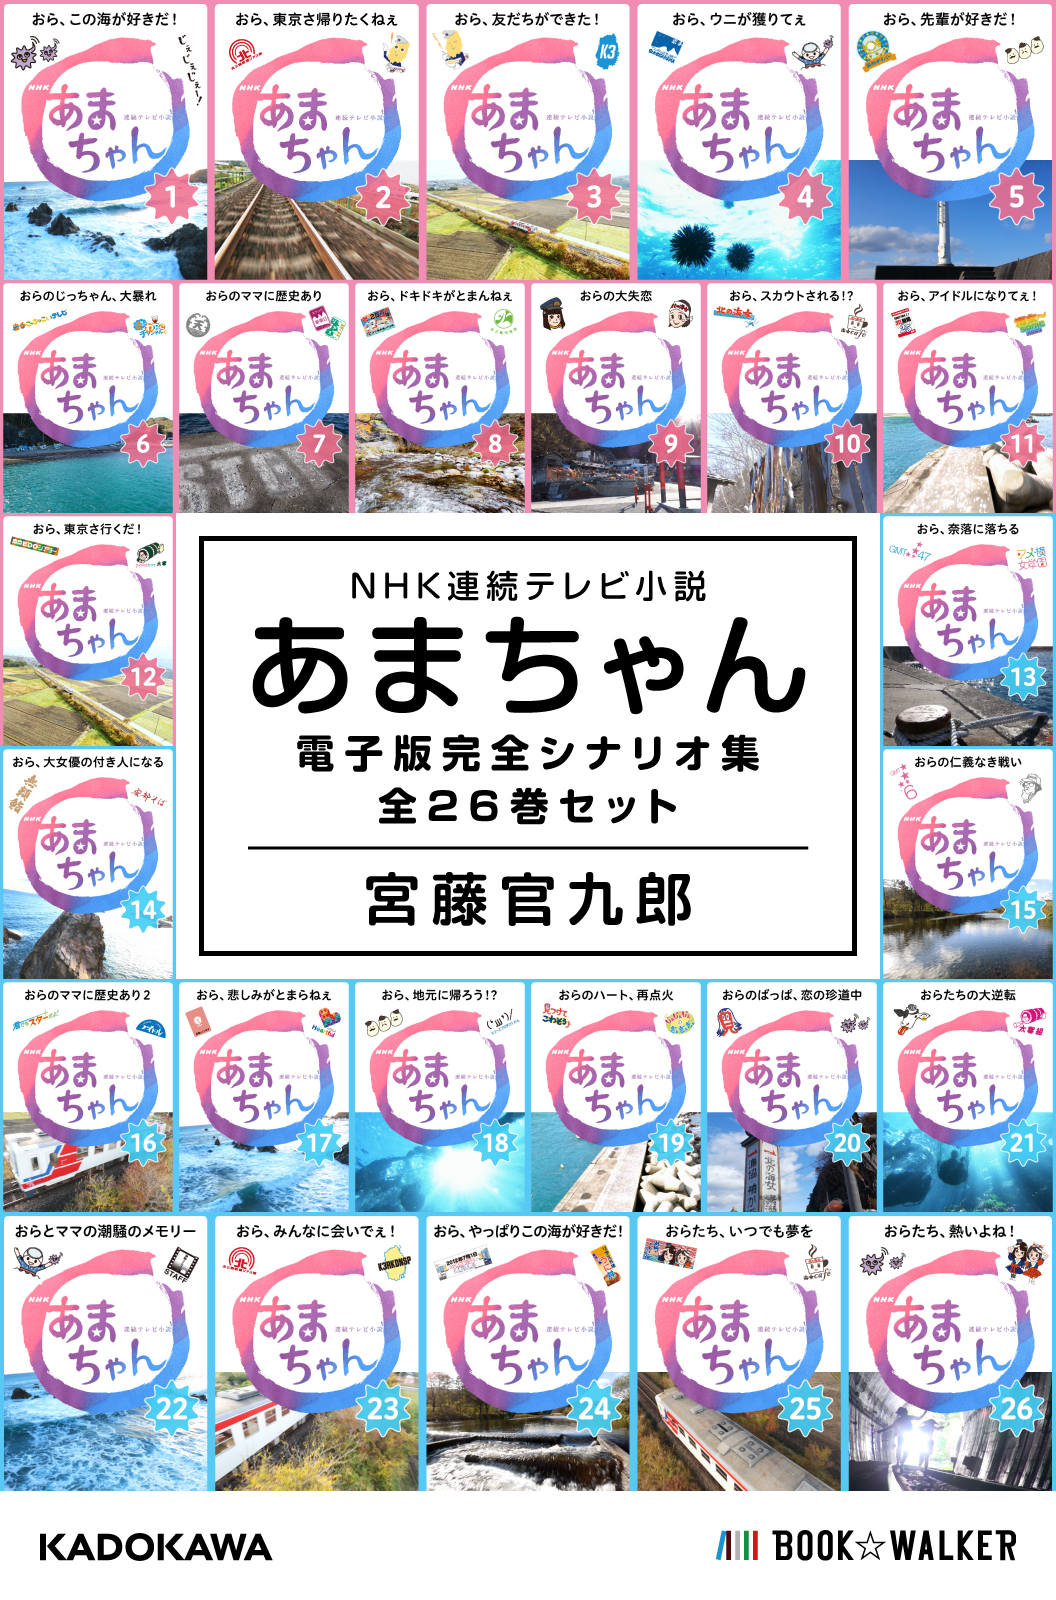 NHK連続テレビ小説 あまちゃん 電子版完全シナリオ集 全26巻セット ...